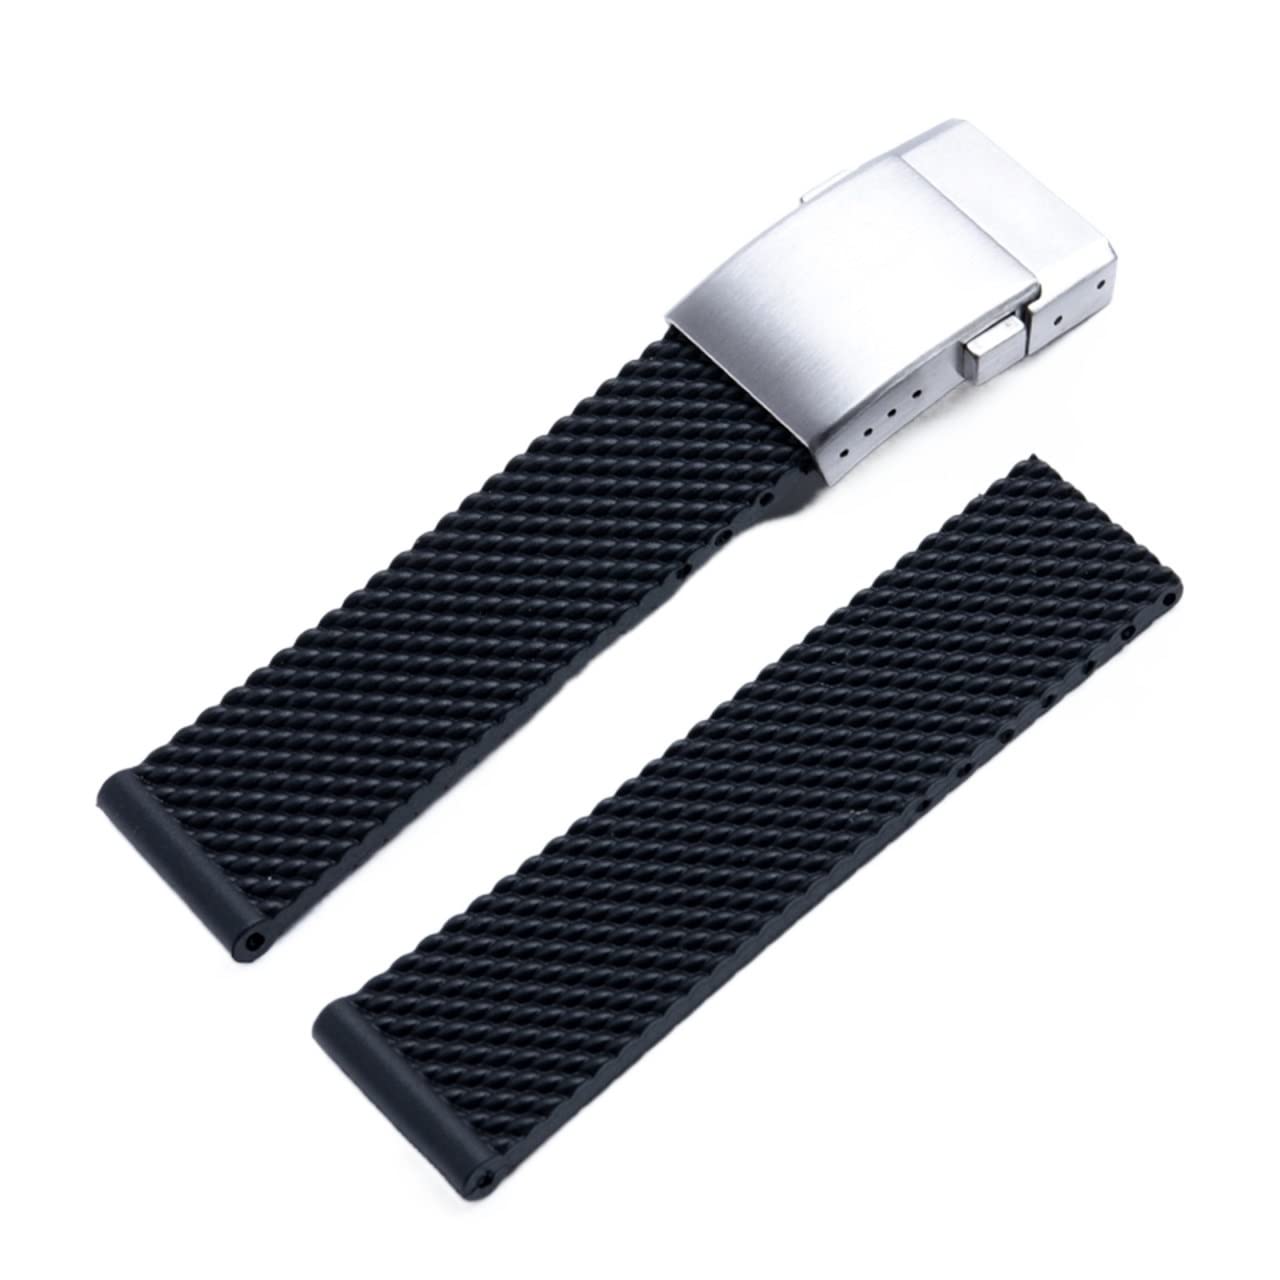 FXJHZH Für Breitling Strap Weiche Silikon Gummi Uhr Band 22mm 24mm Armband Armband Für Navitimer/Avenger/Superocean für Breitling Uhrenarmbänder